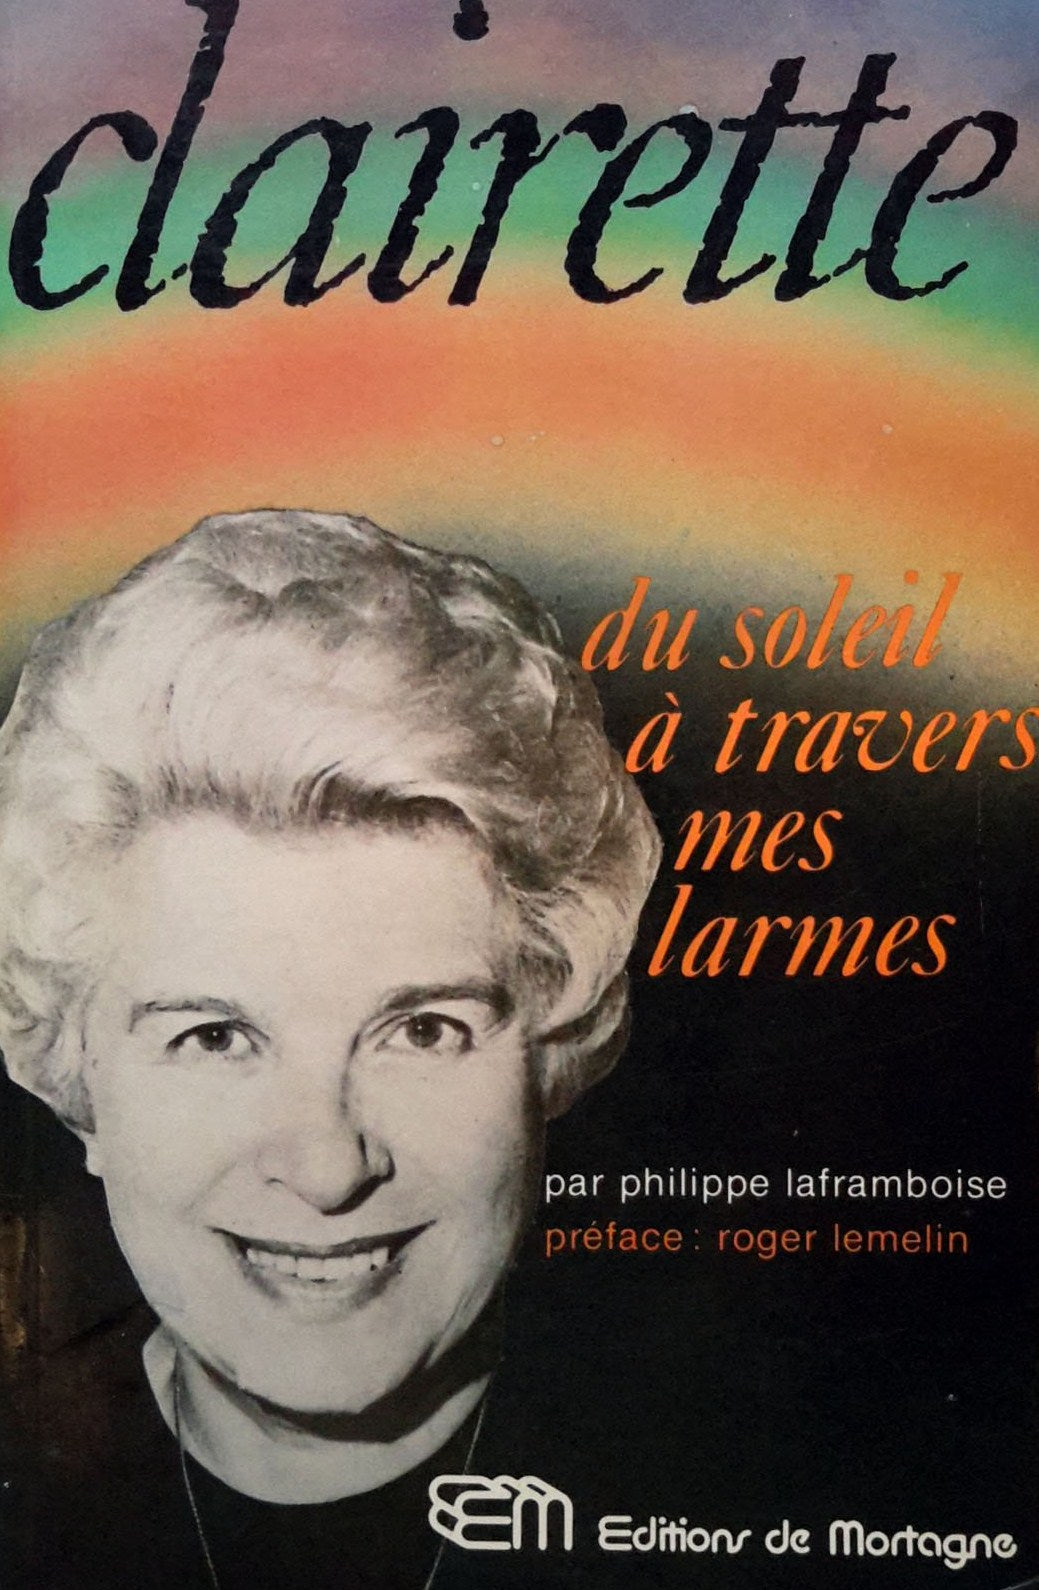 Livre ISBN 2890740447 Clairette : Du soleil à travers mes larmes (Philippe Laframboise)